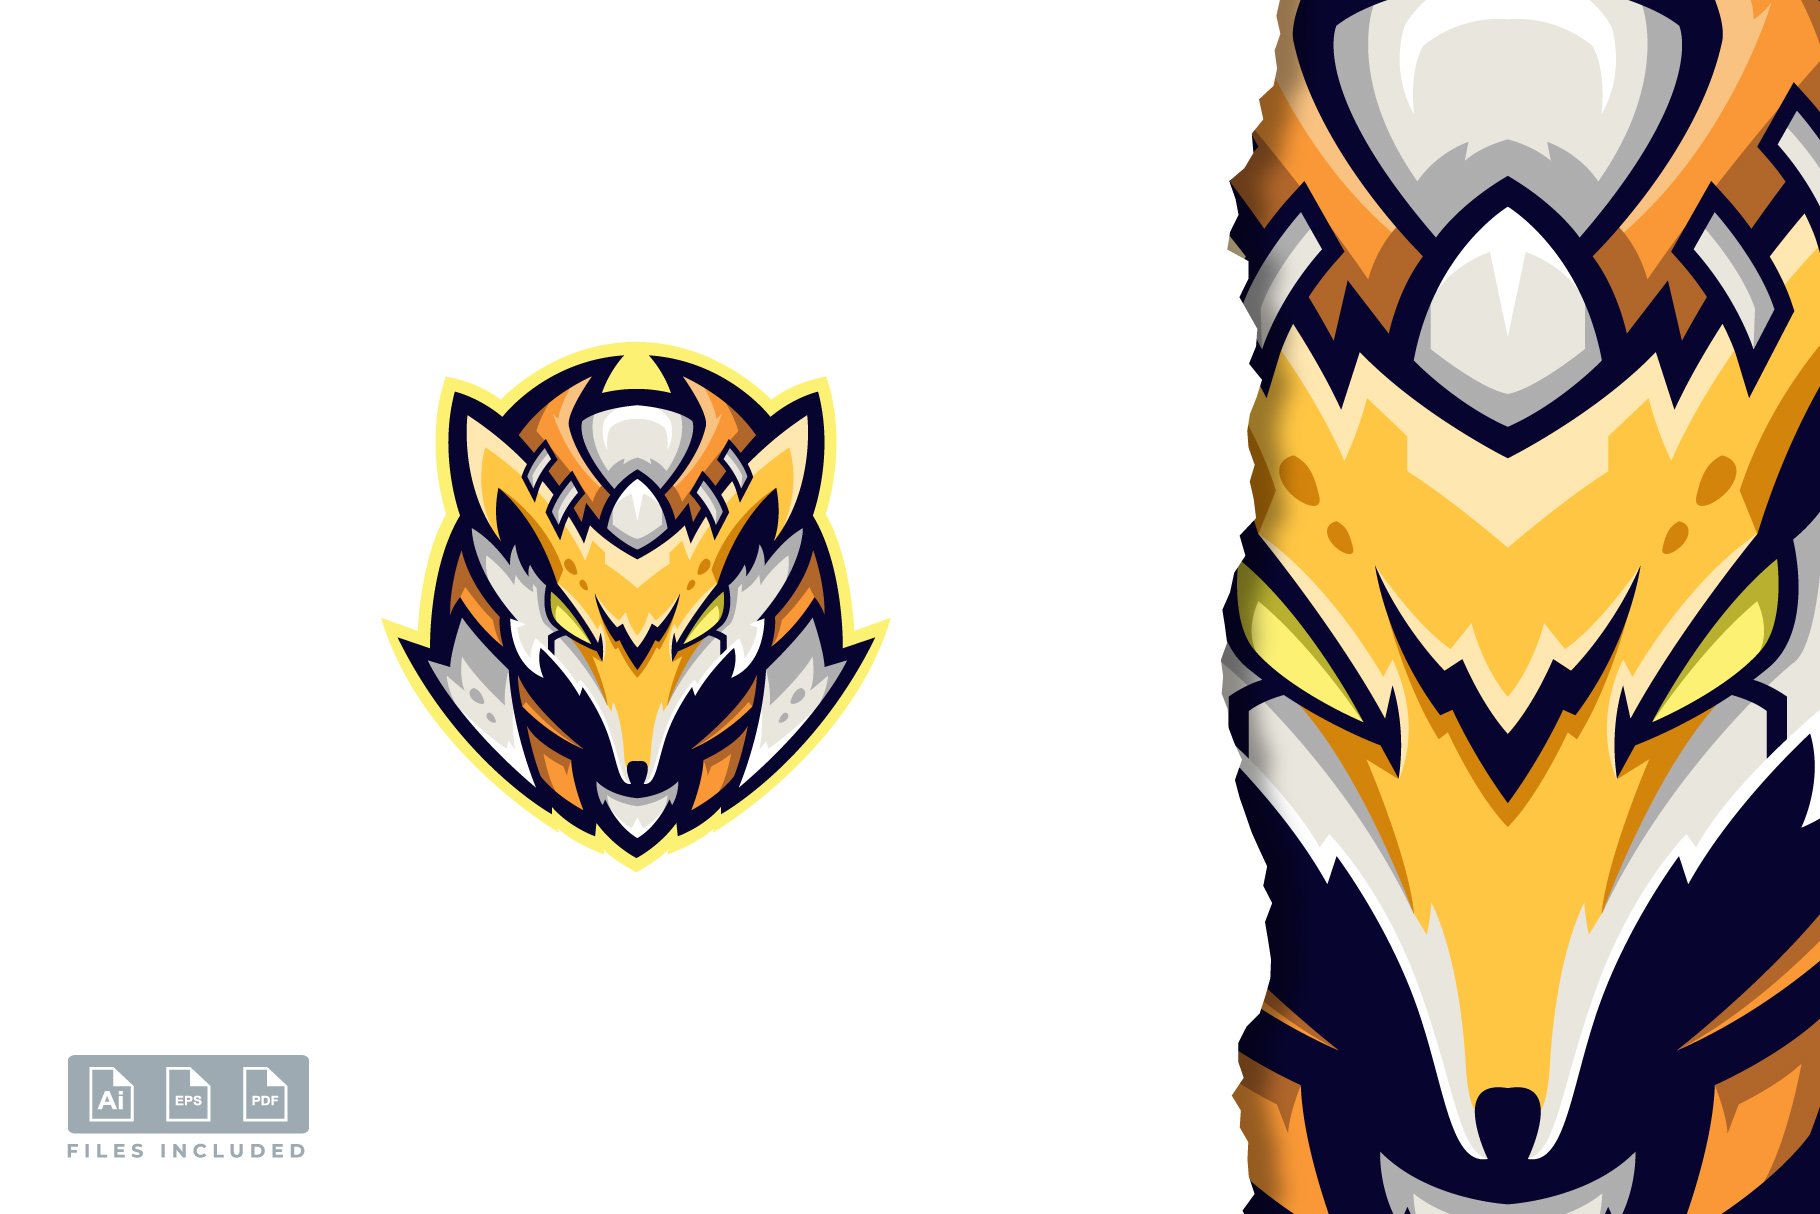 Fox logo design cover image.